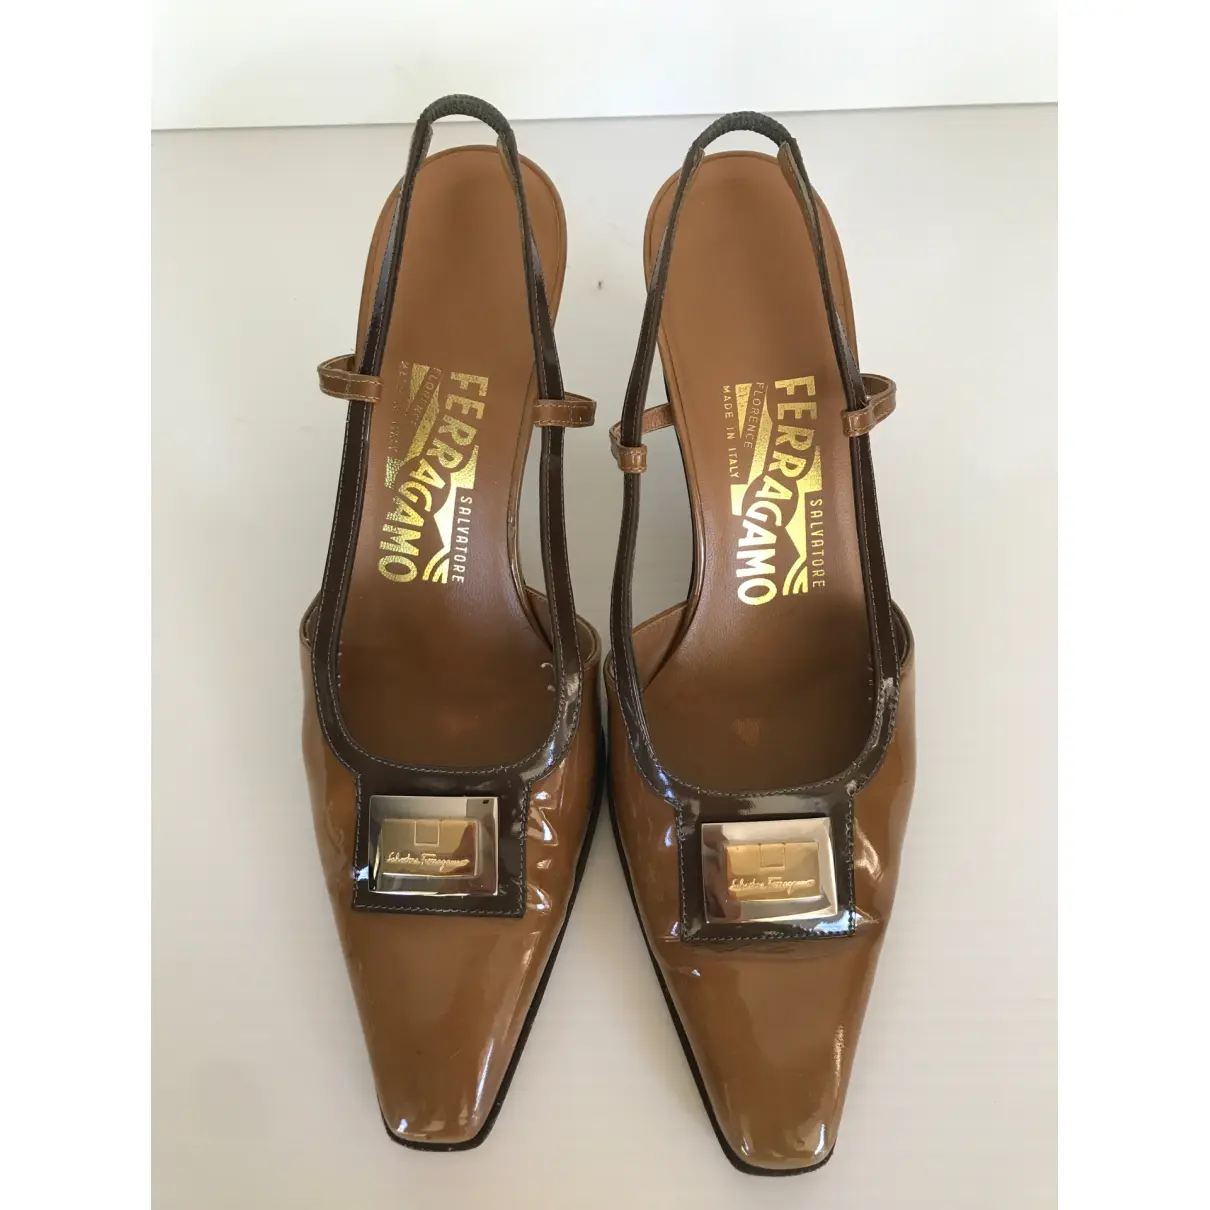 Buy Salvatore Ferragamo Patent leather heels online